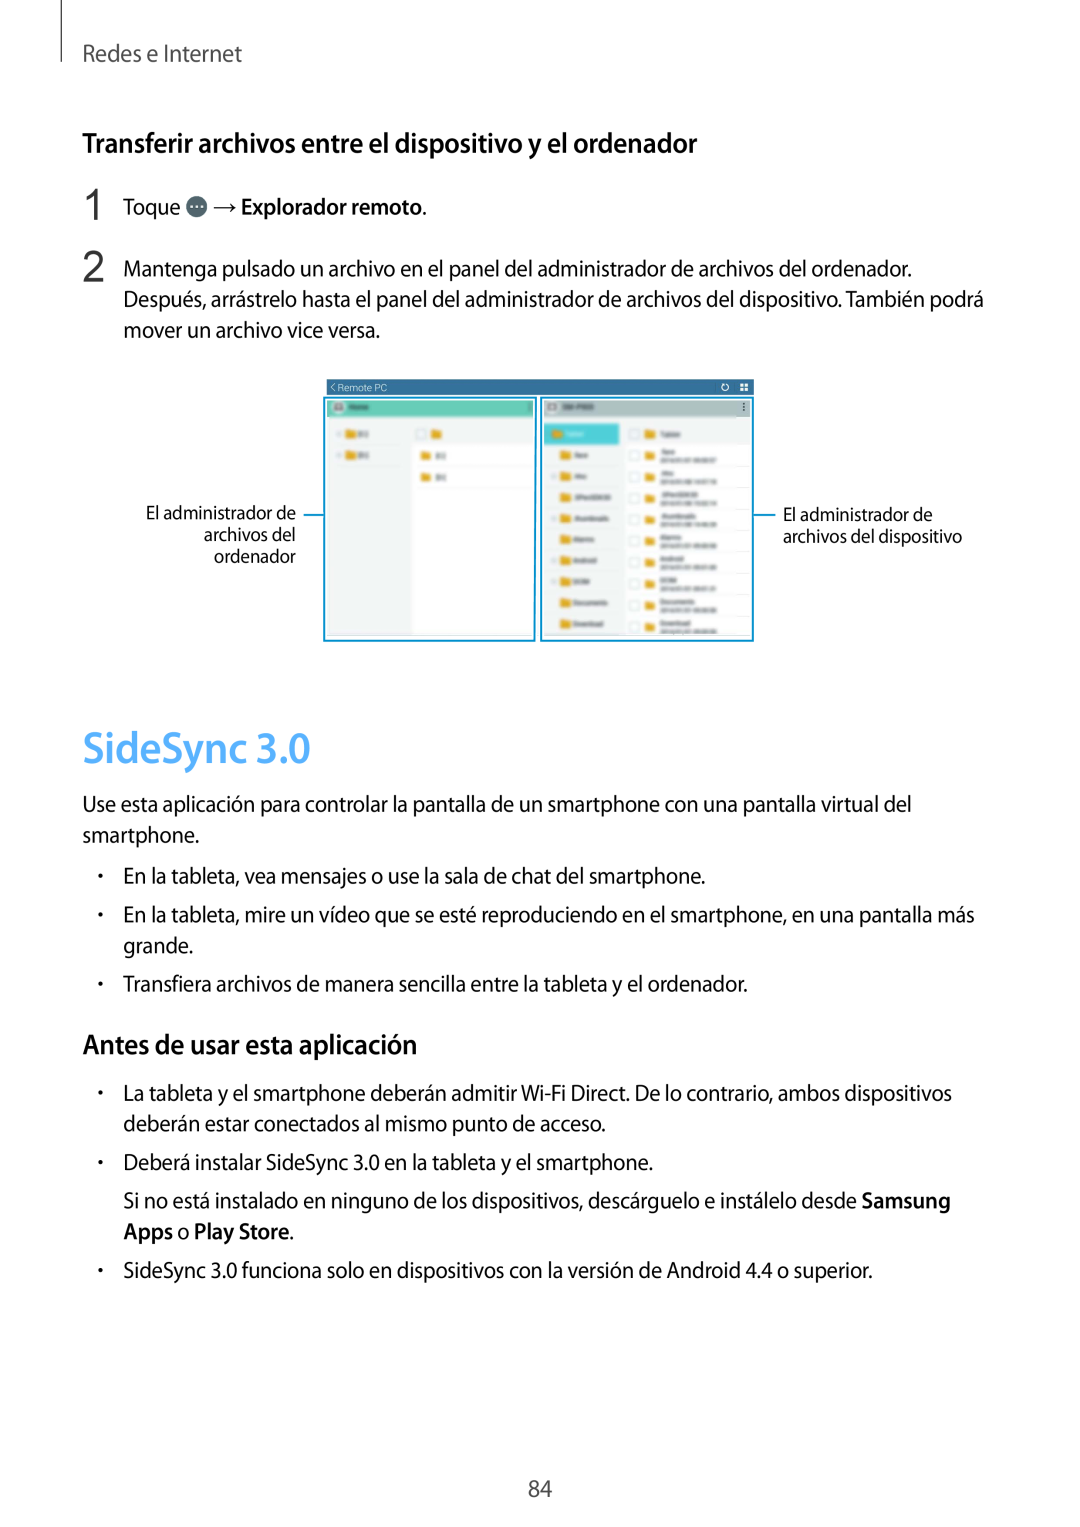 Samsung SM-T320XZWAPHE manual SideSync, Transferir archivos entre el dispositivo y el ordenador, Toque →Explorador remoto 